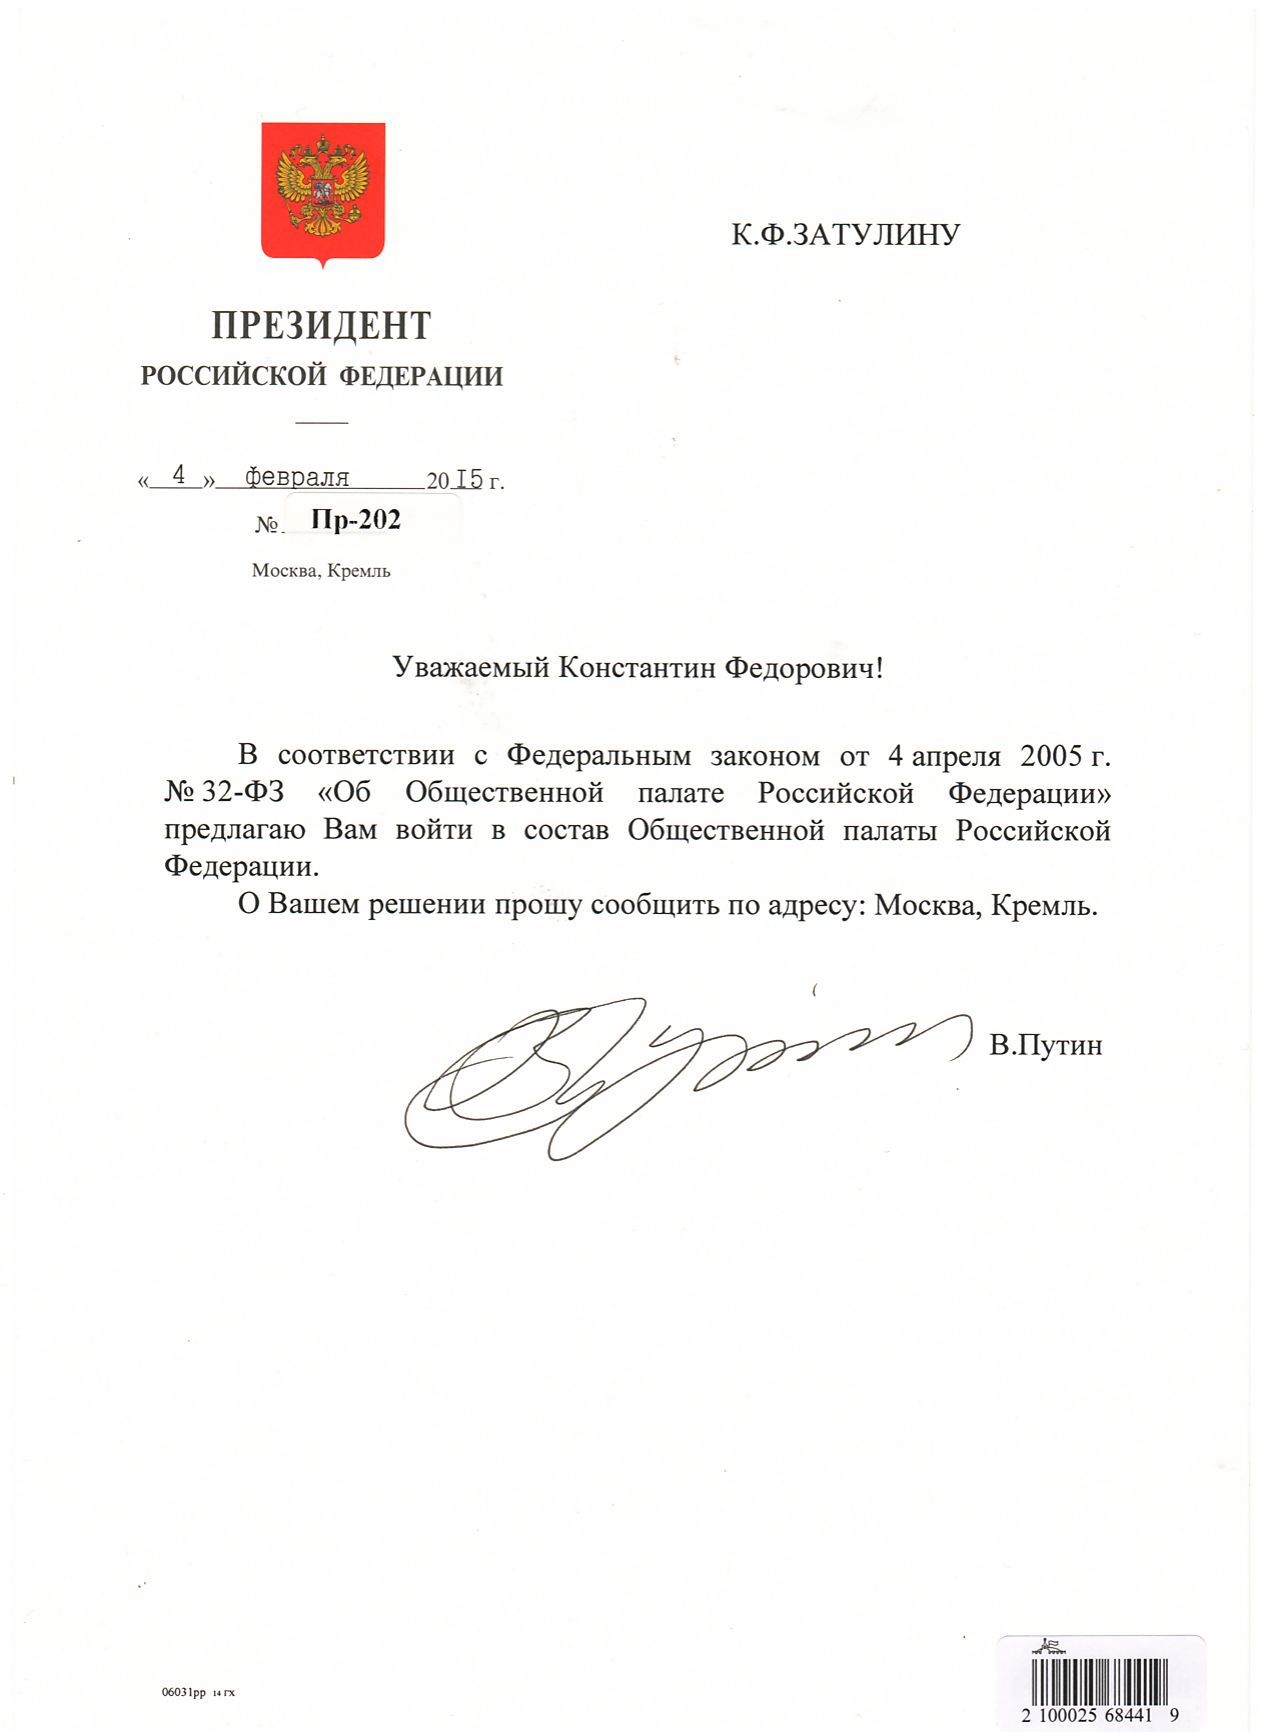 Дата обращения президента. Бланк письма президента РФ. Письмо президента Путина.